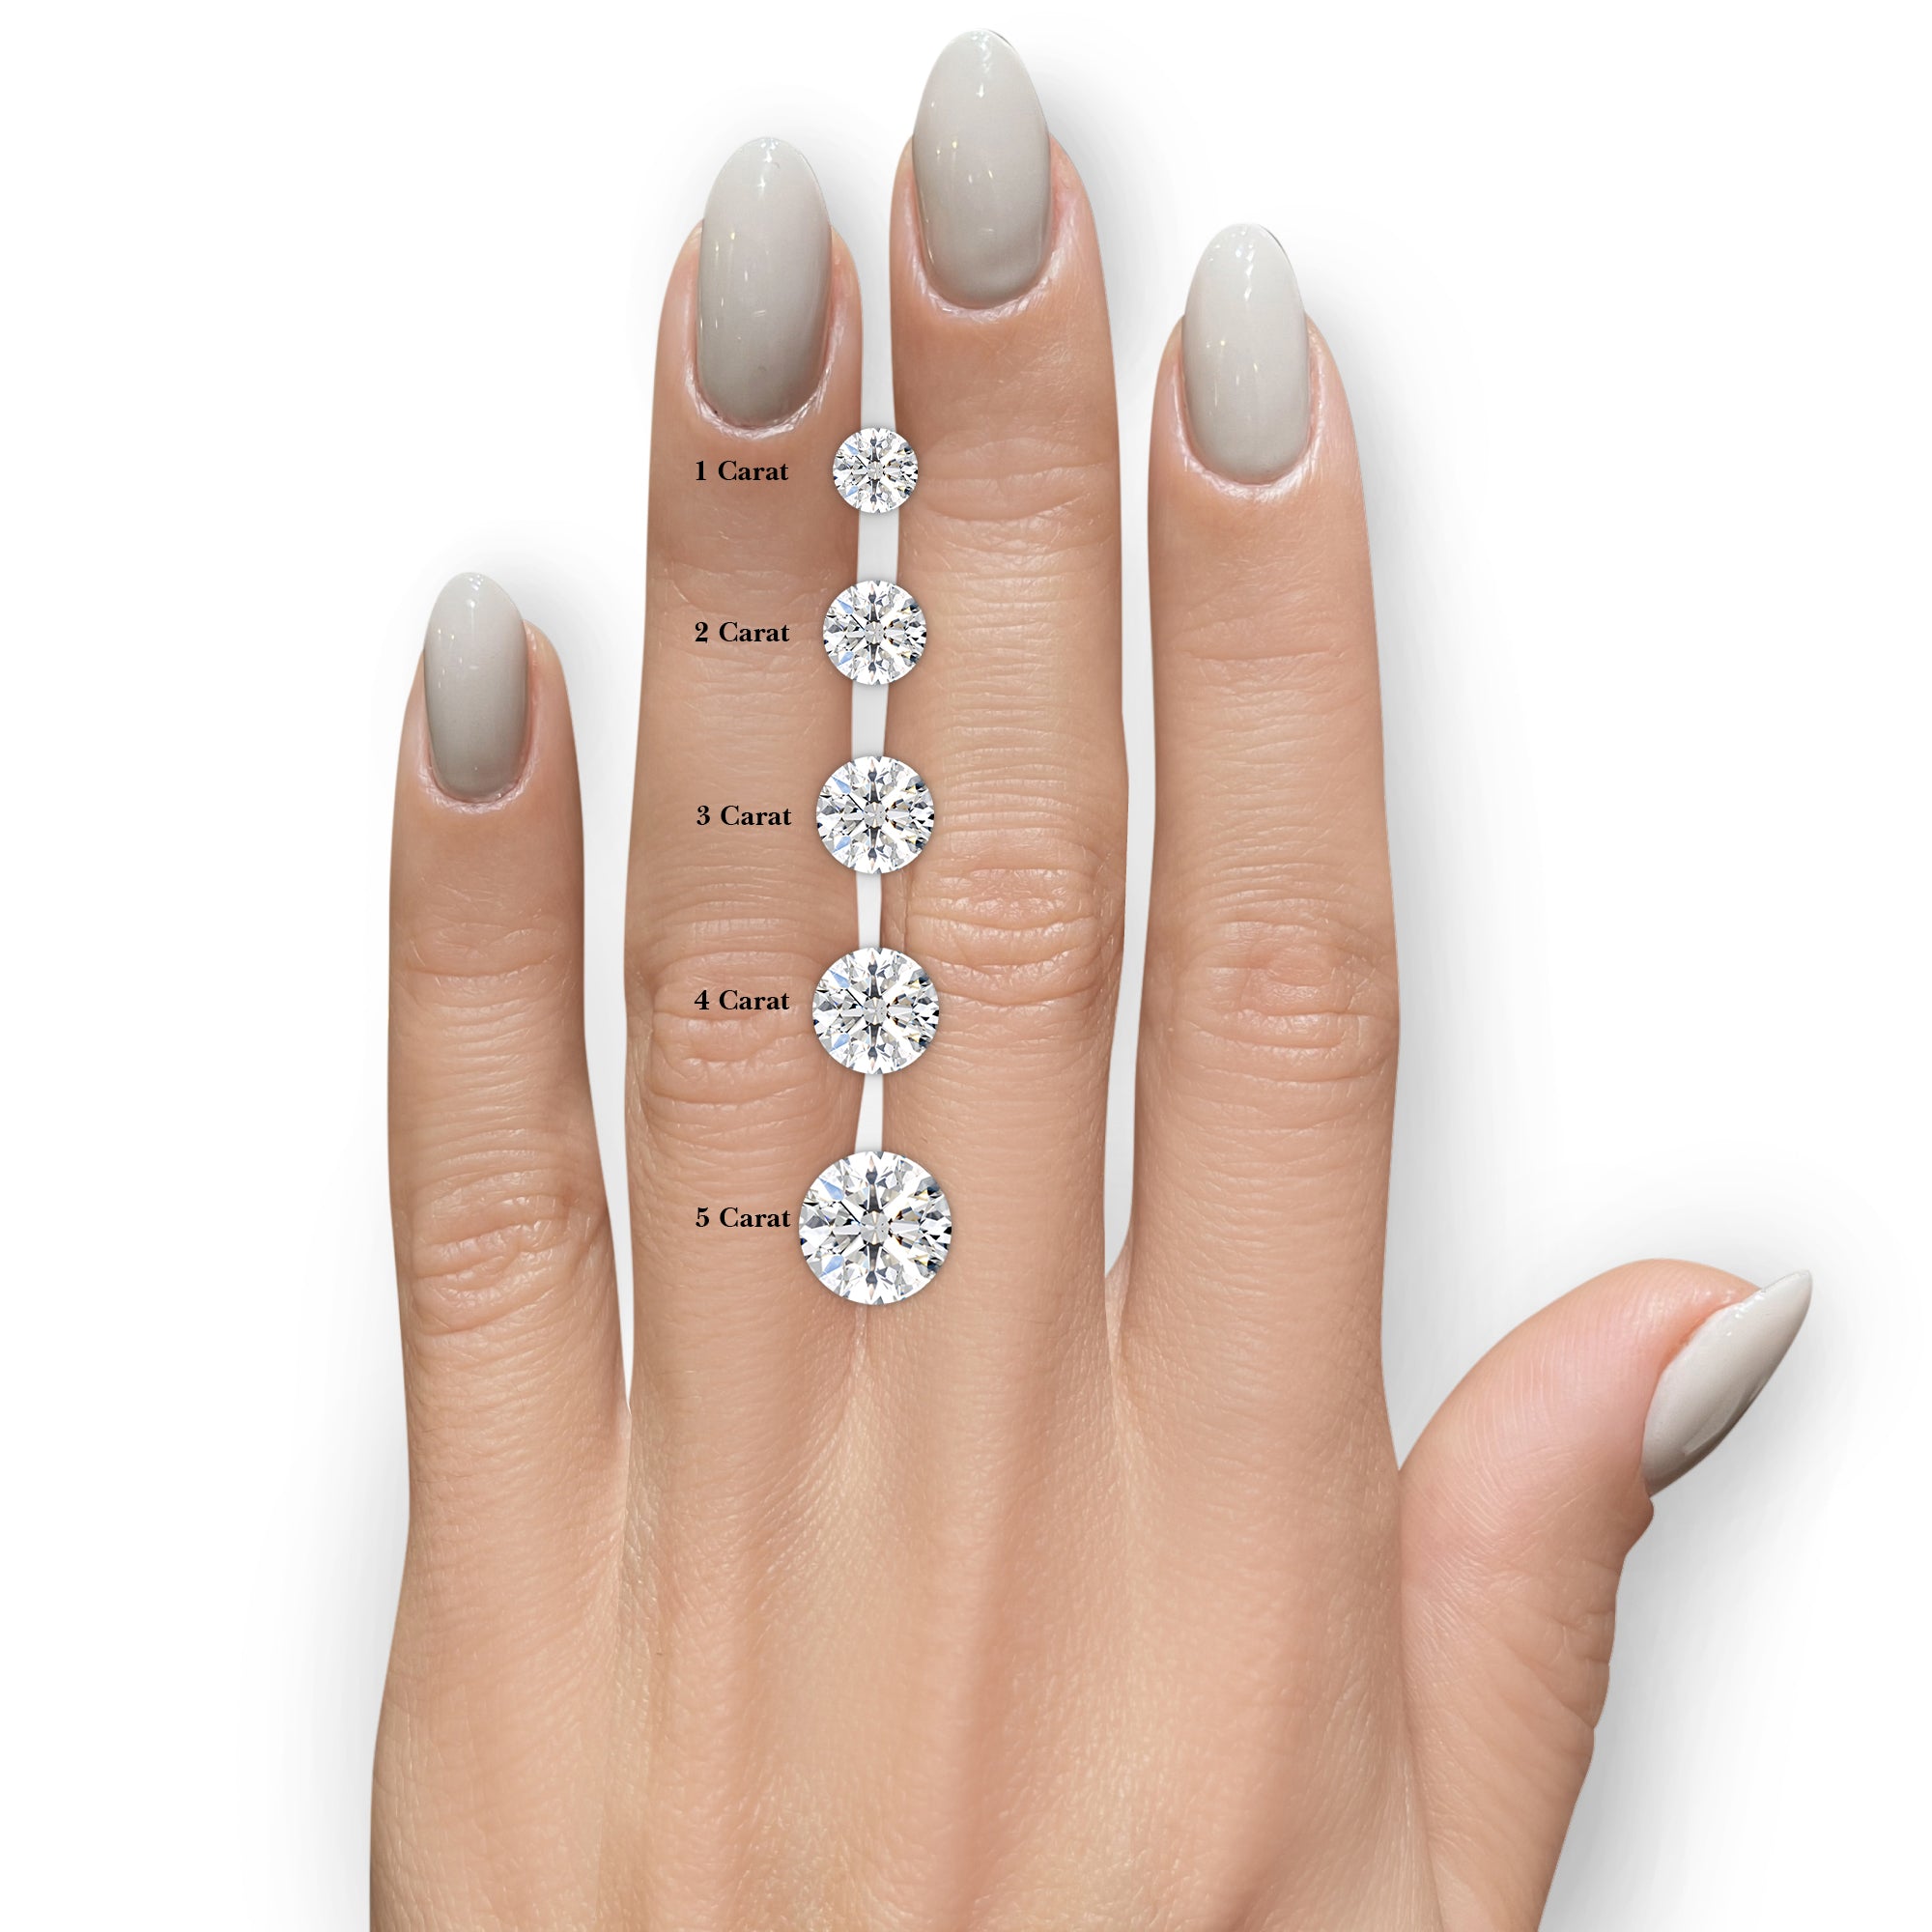 Lorena Diamond Engagement Ring -14K White Gold